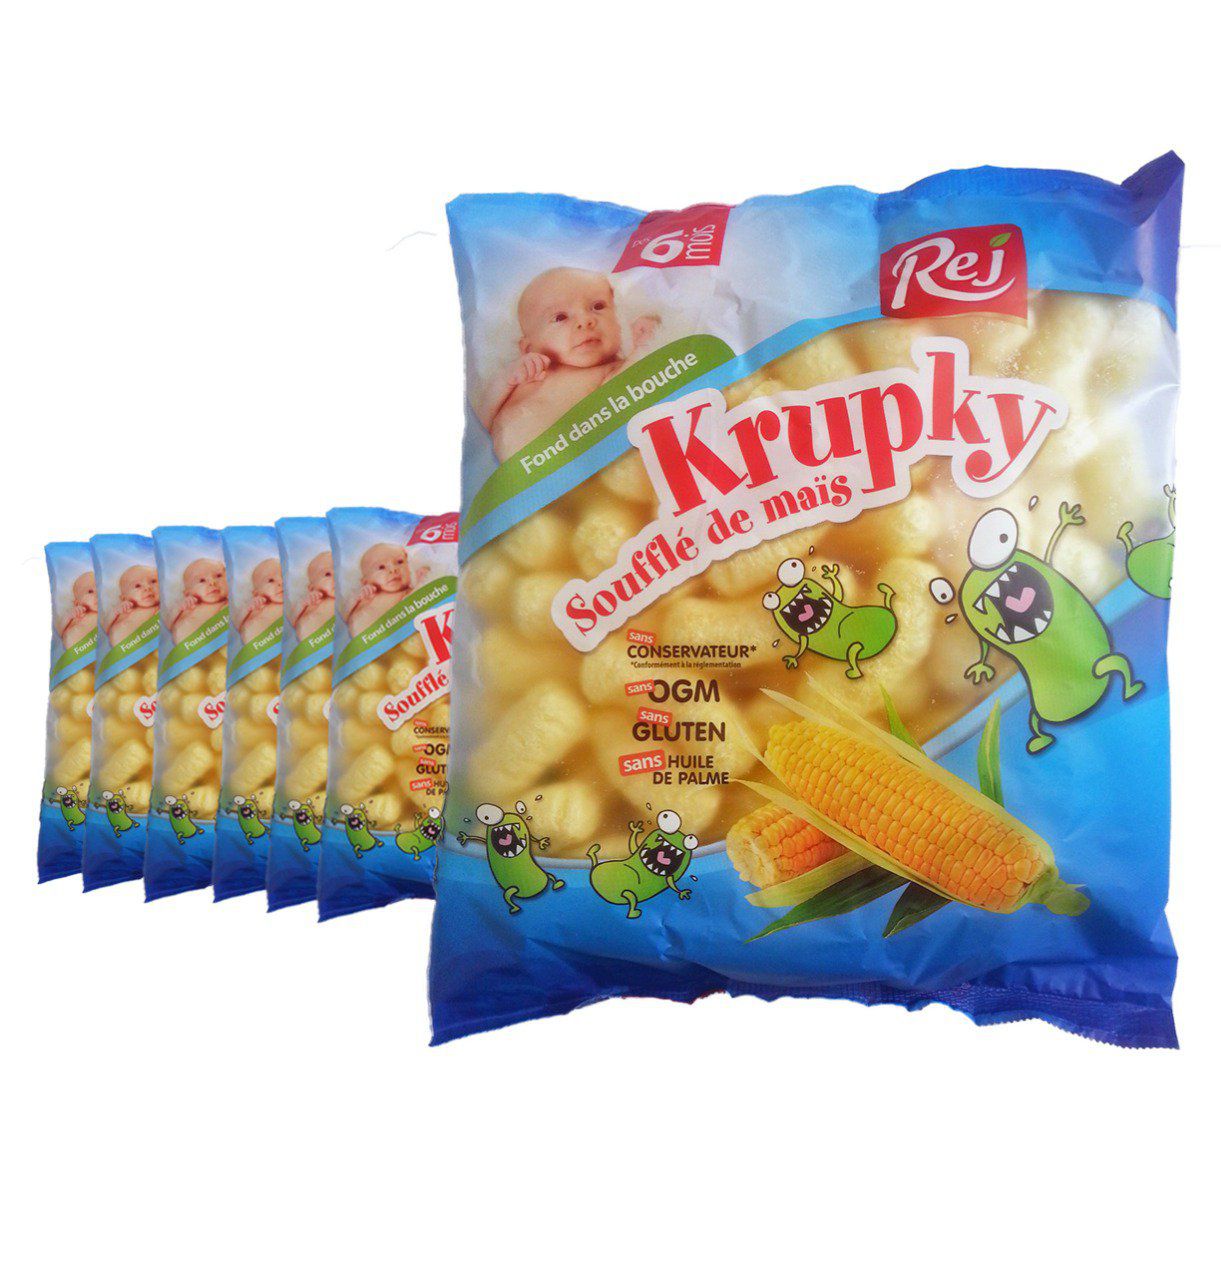 KRUPKY soufflé de maïs pour bébé (dès 6 mois) - Pack de 8 sachets